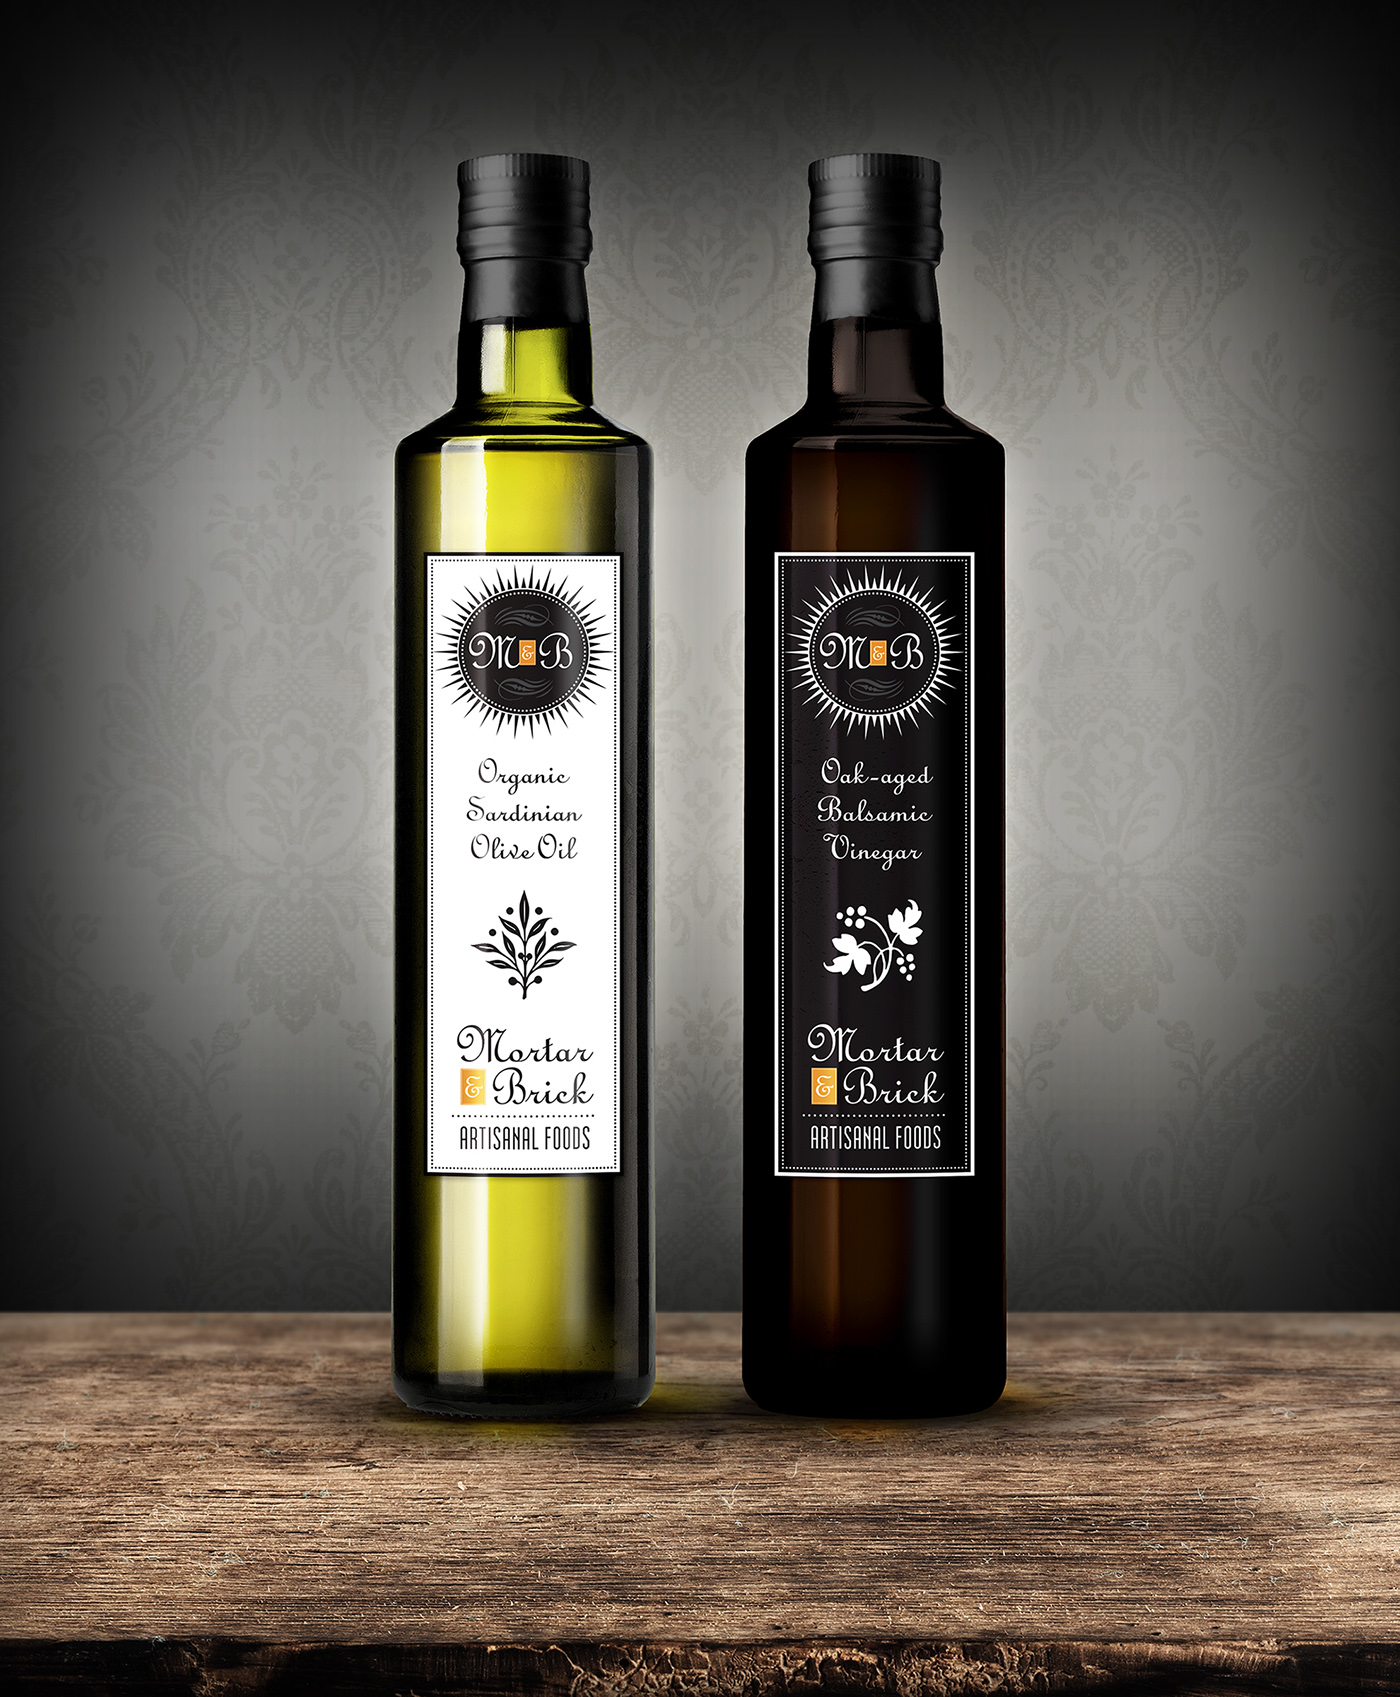 cpg food & beverage artisanal oil & vinegar Food Packaging brand identity